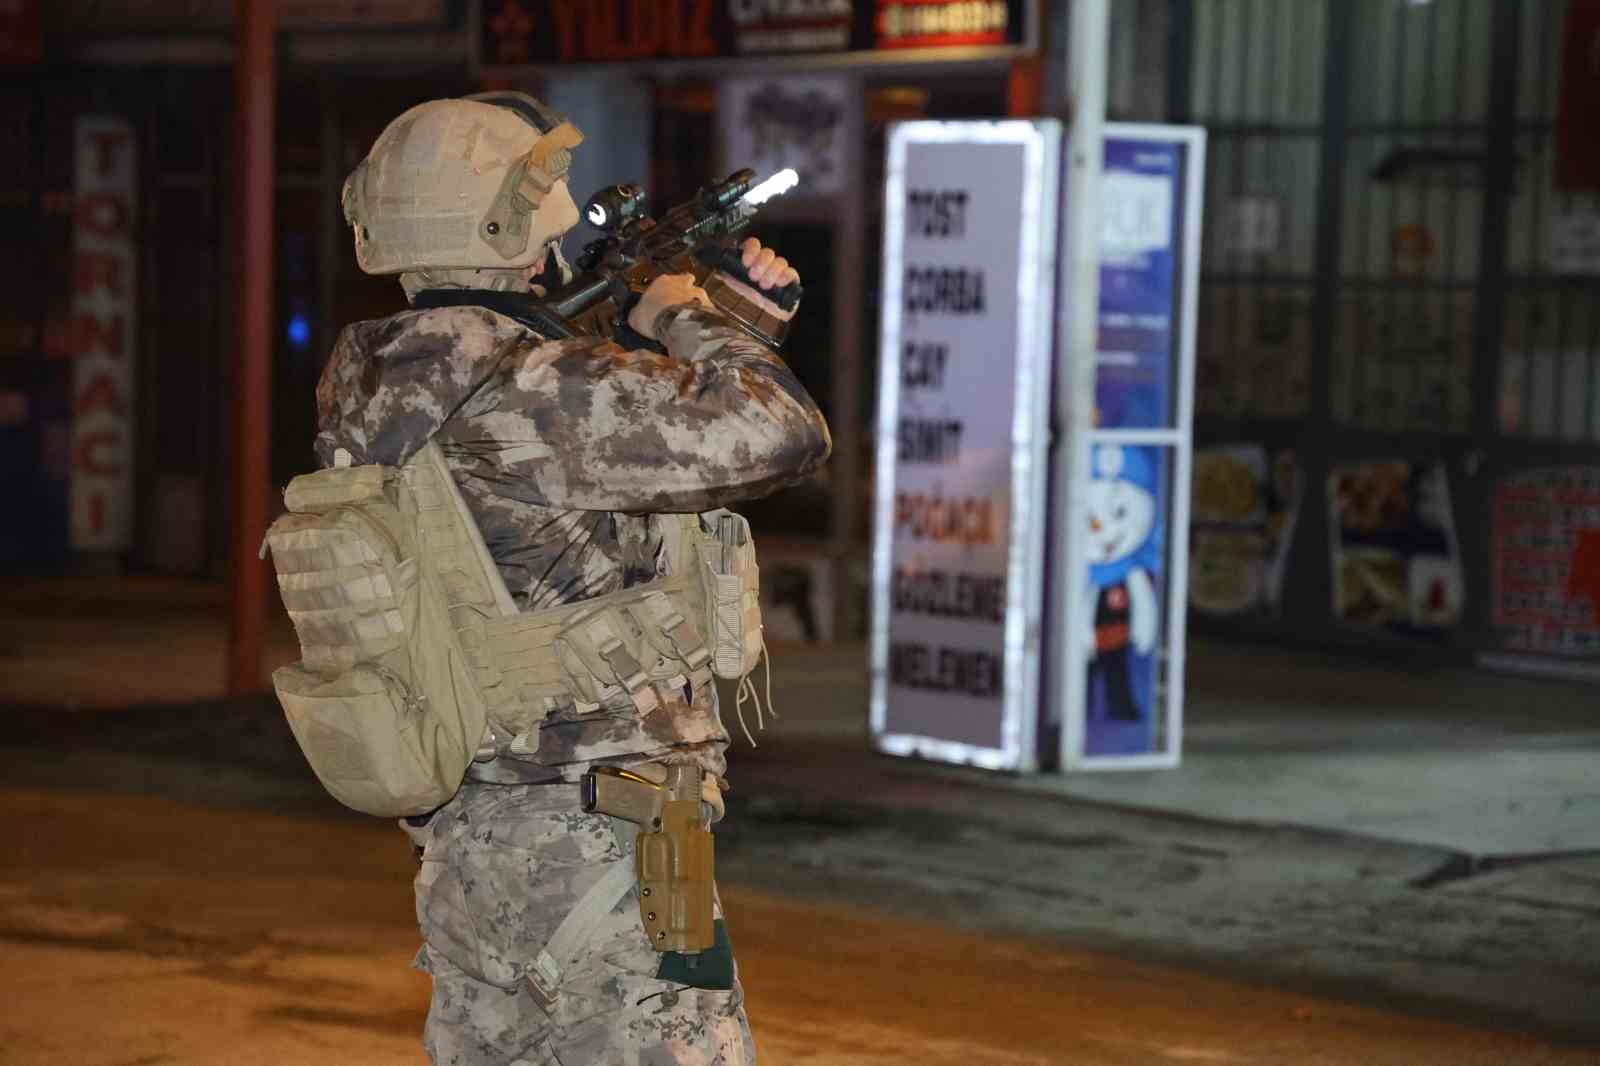 Dükkana girerek başına silah dayayan şahıs 48 bin TL’lik zarar verdi: 7 saattir polise direniyor
